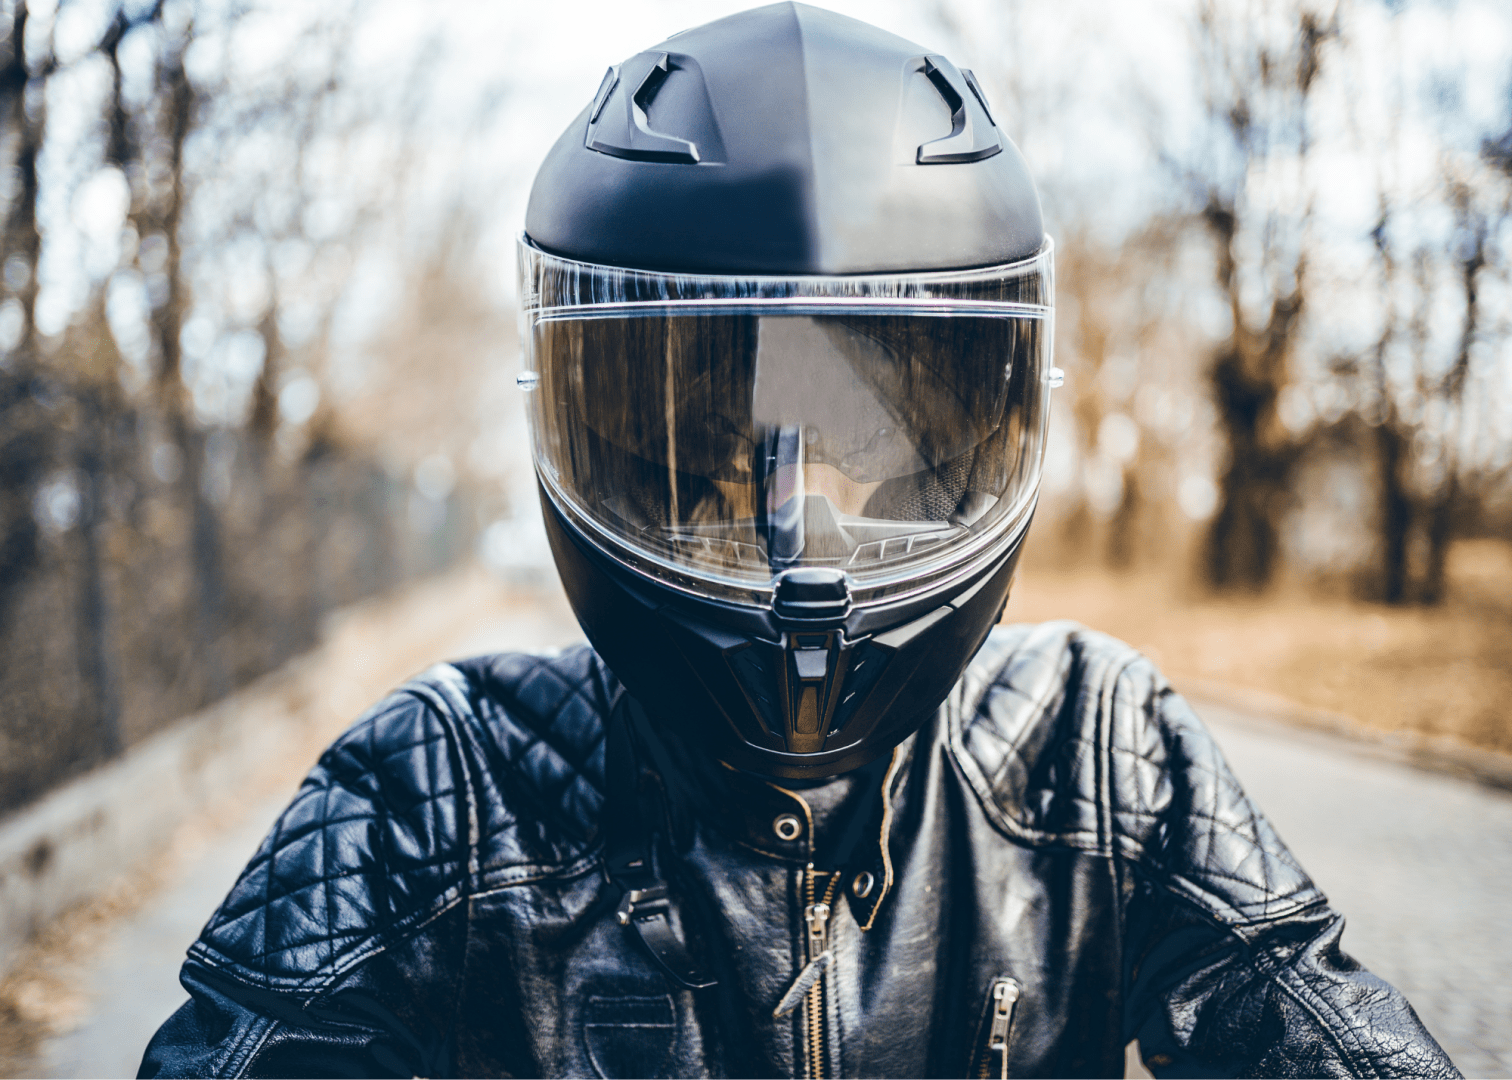 Man in Helmet - Motorcycle Laws in South Carolina